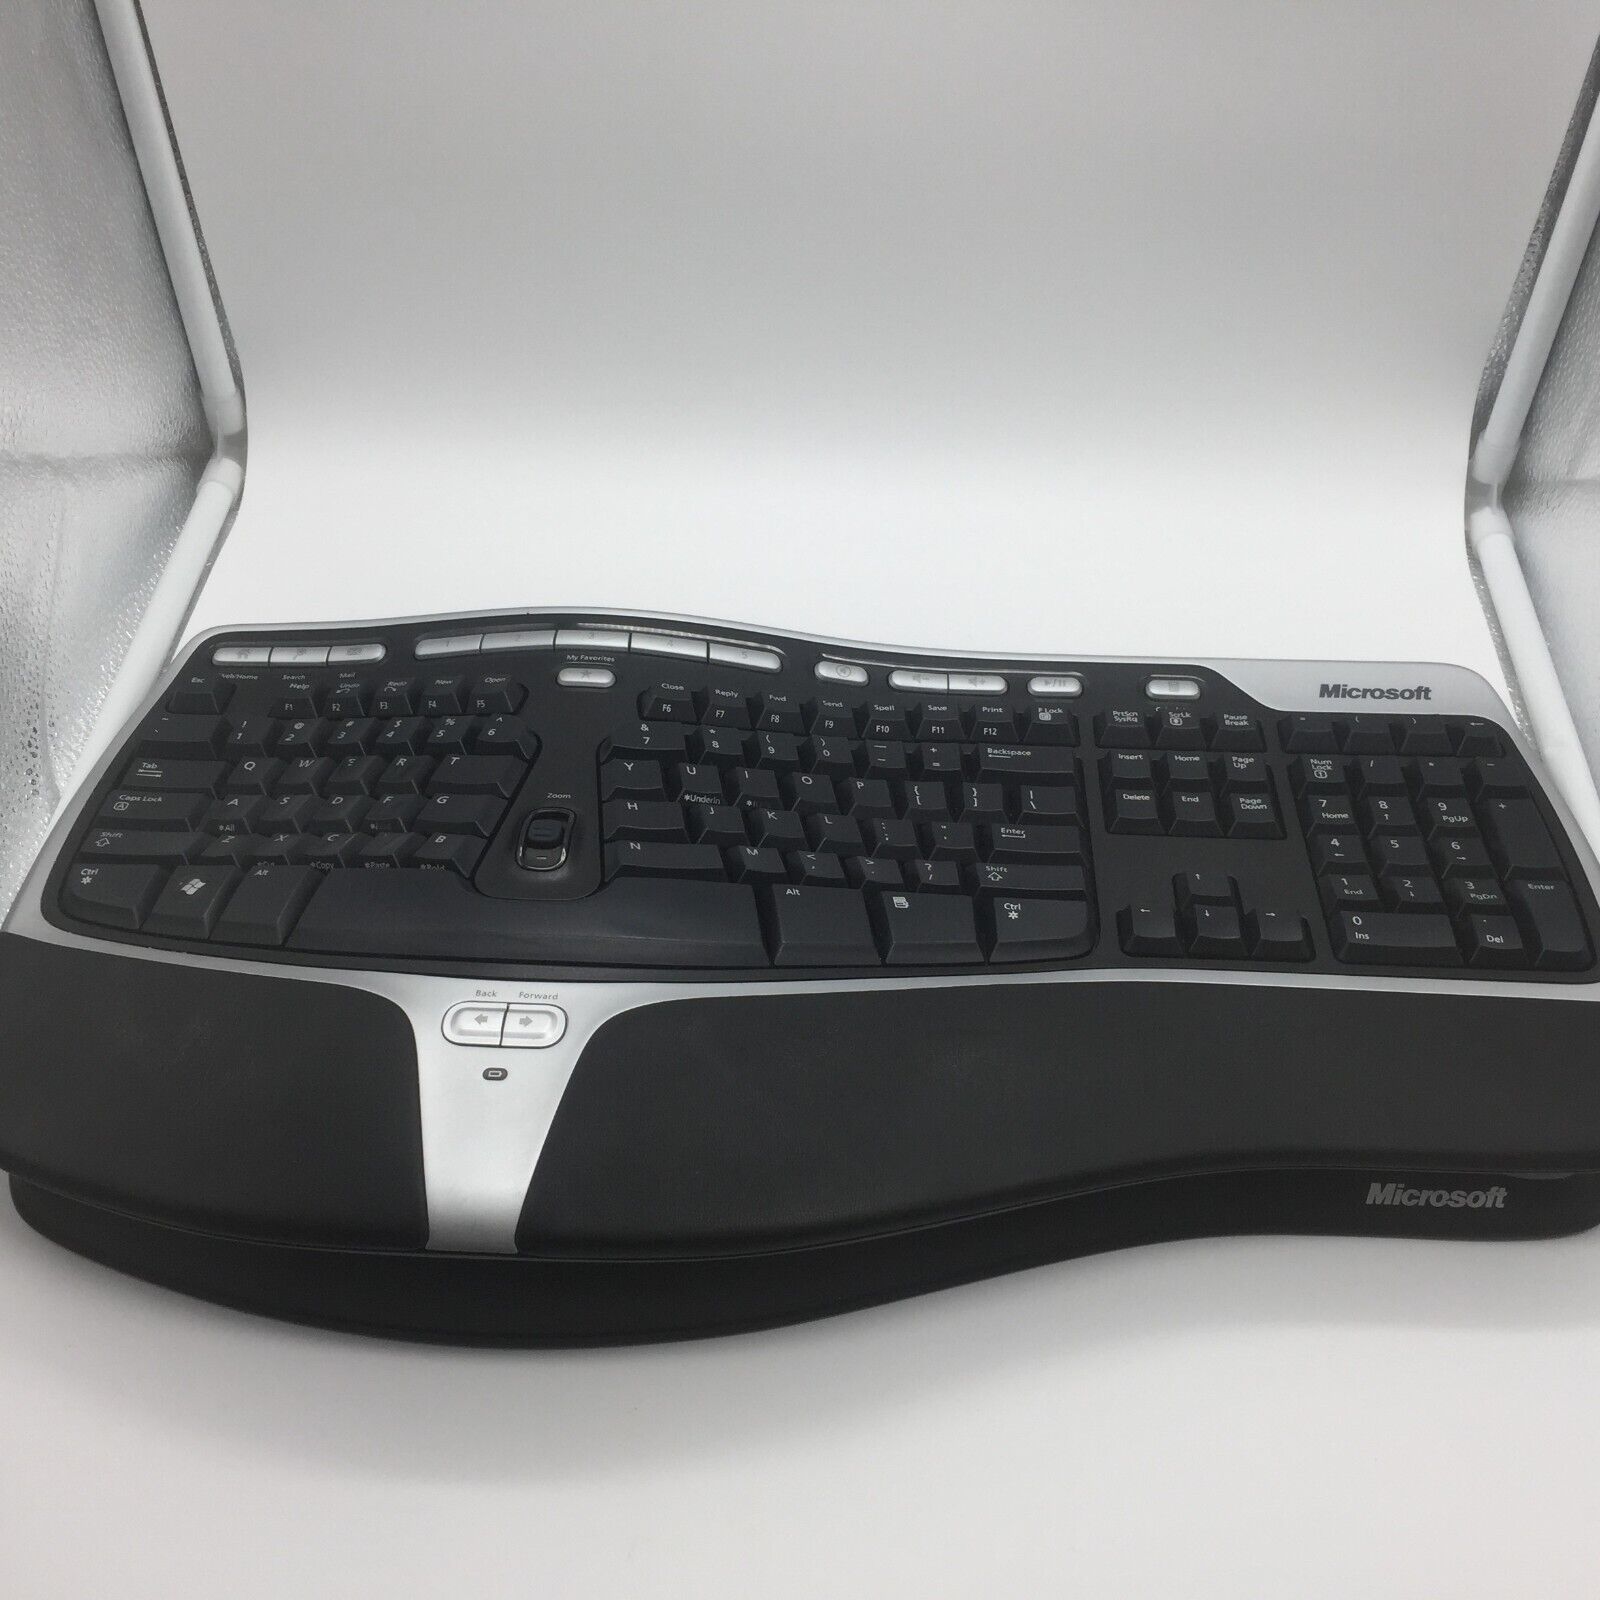 Microsoft Natural Wireless Ergonomic Keyboard 7000 No USB Dongle 